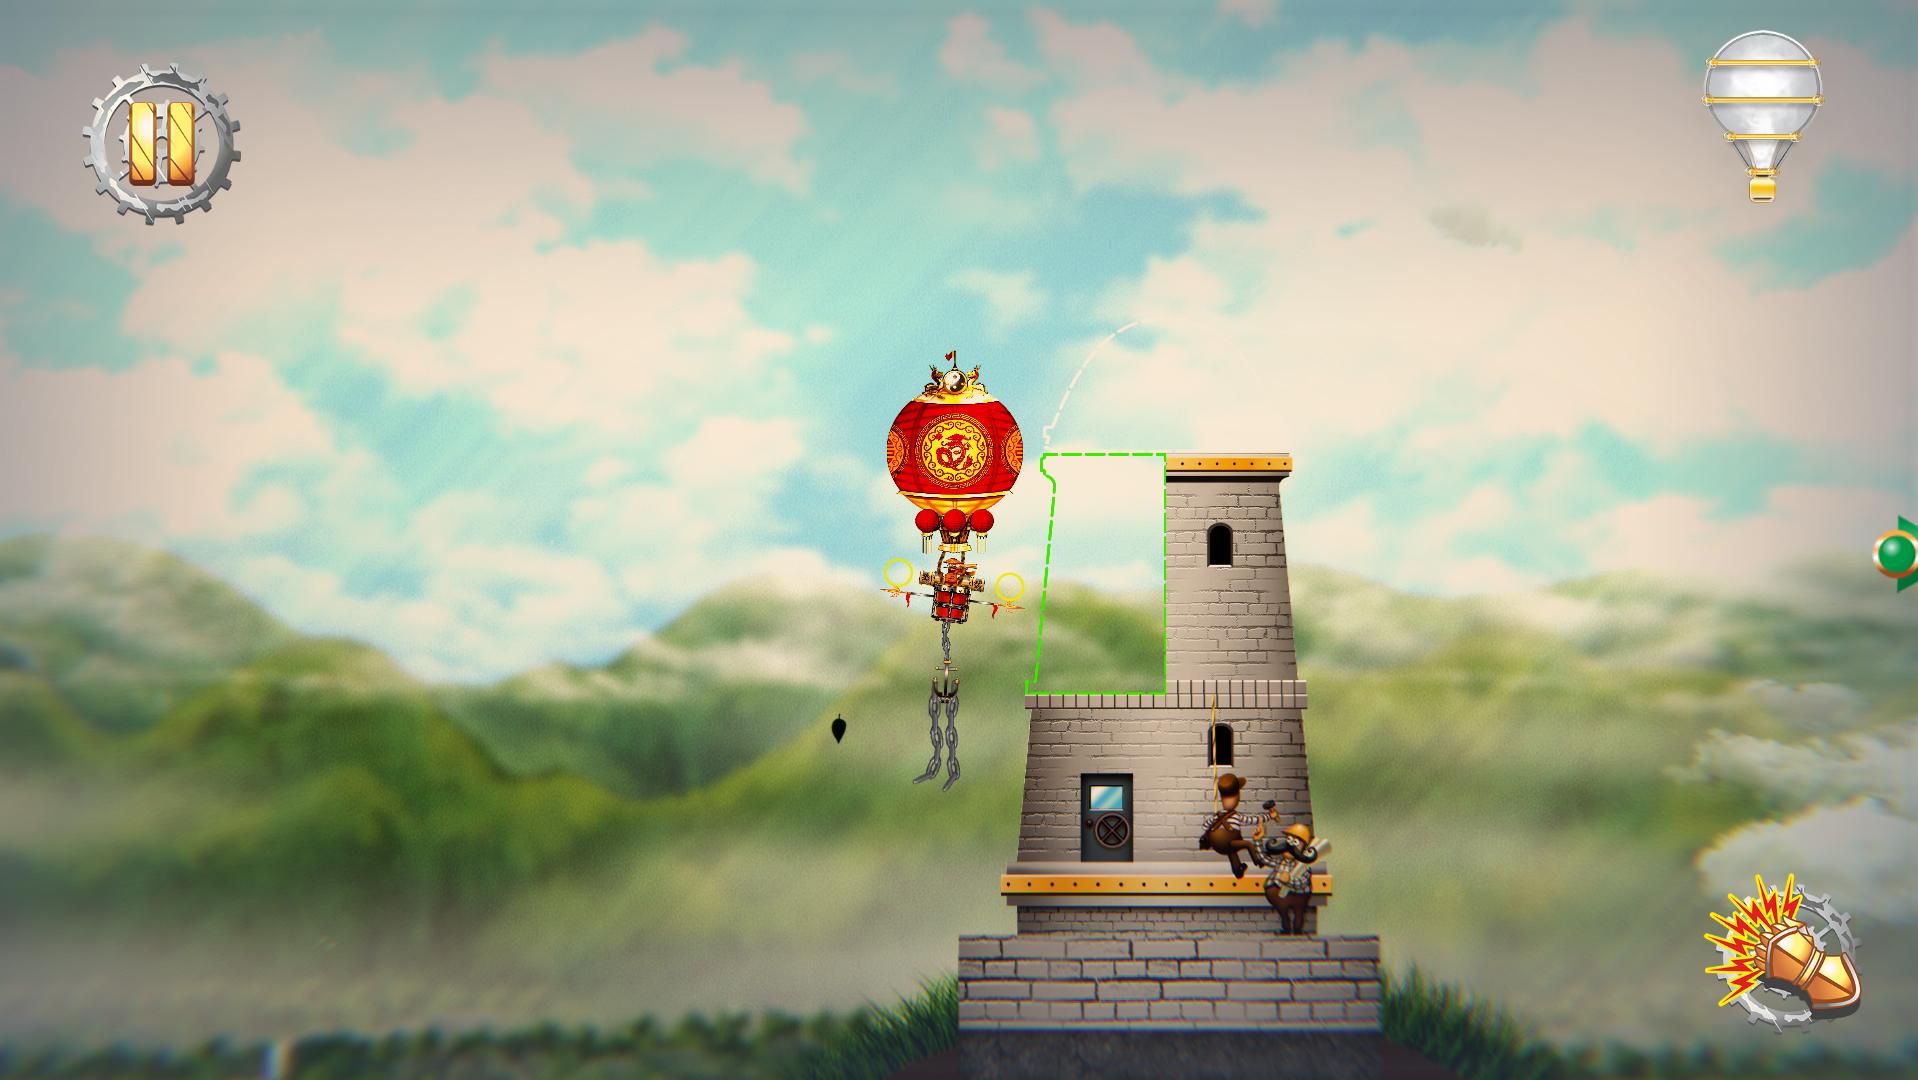 Screenshot №3 from game Pilam Sky